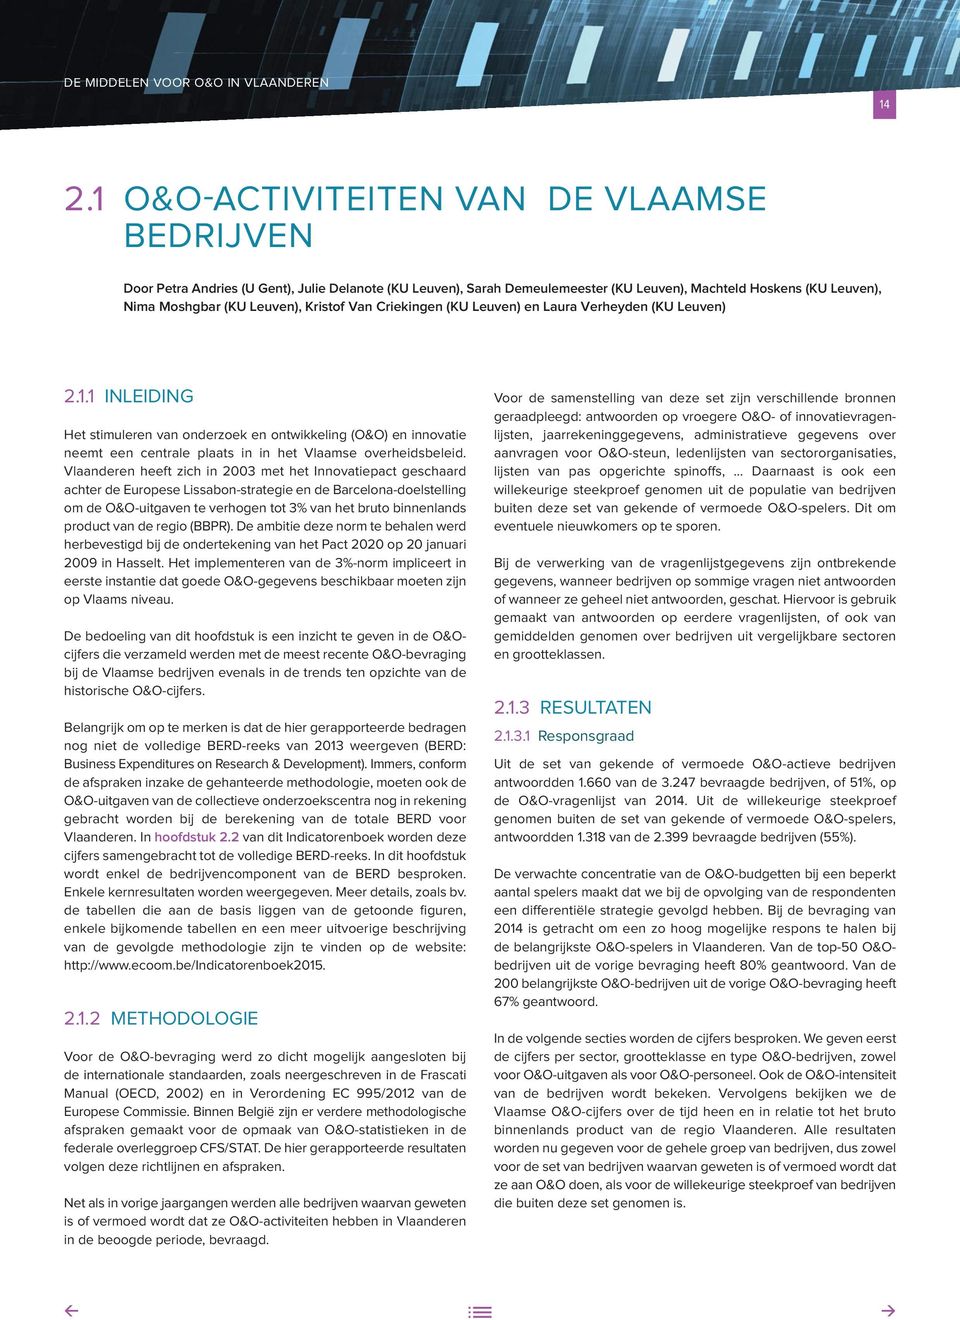 1 INLEIDING Het stimuleren van onderzoek en ontwikkeling (O&O) en innovatie neemt een centrale plaats in in het Vlaamse overheidsbeleid.